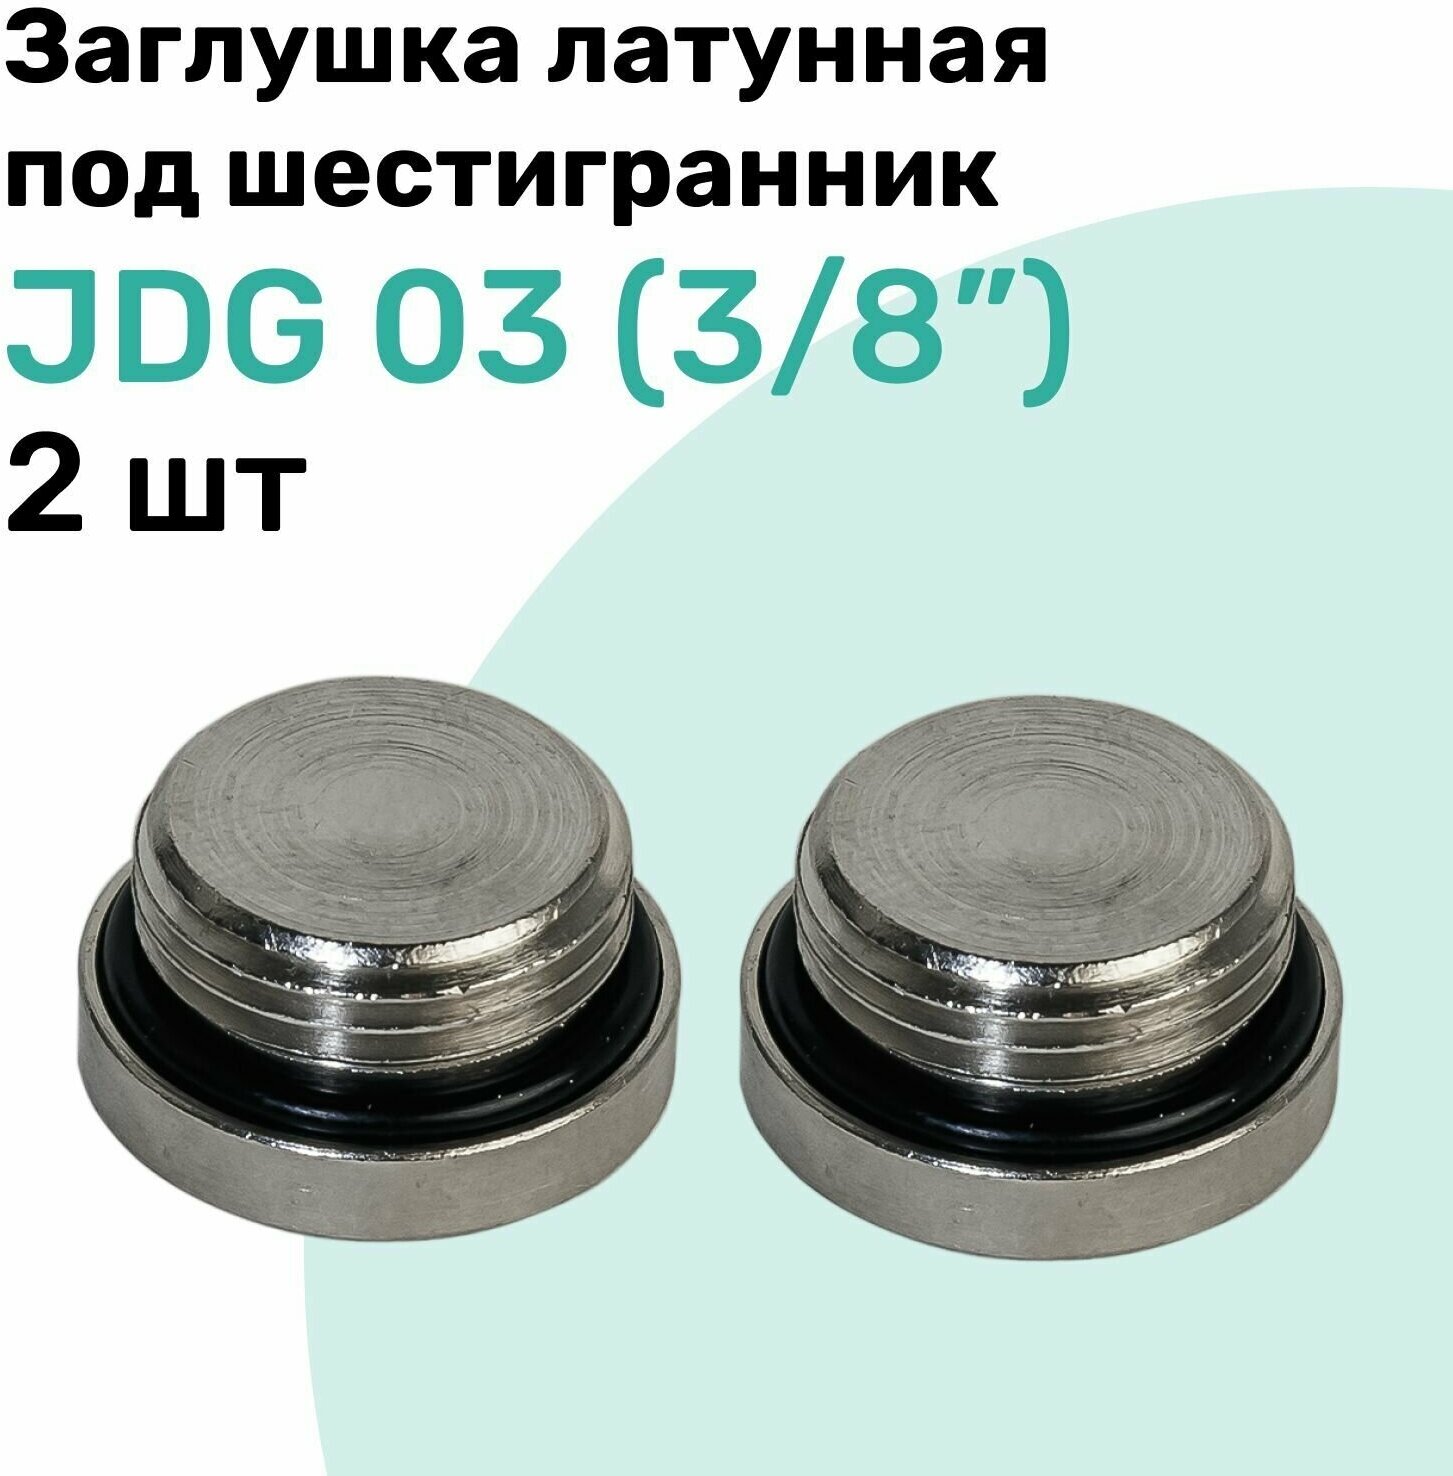 Заглушка латунная под шестигранник JDG 03 (R3/8"), с уплотнительным кольцом из NBR, Пневмозаглушка NBPT, Набор 2шт